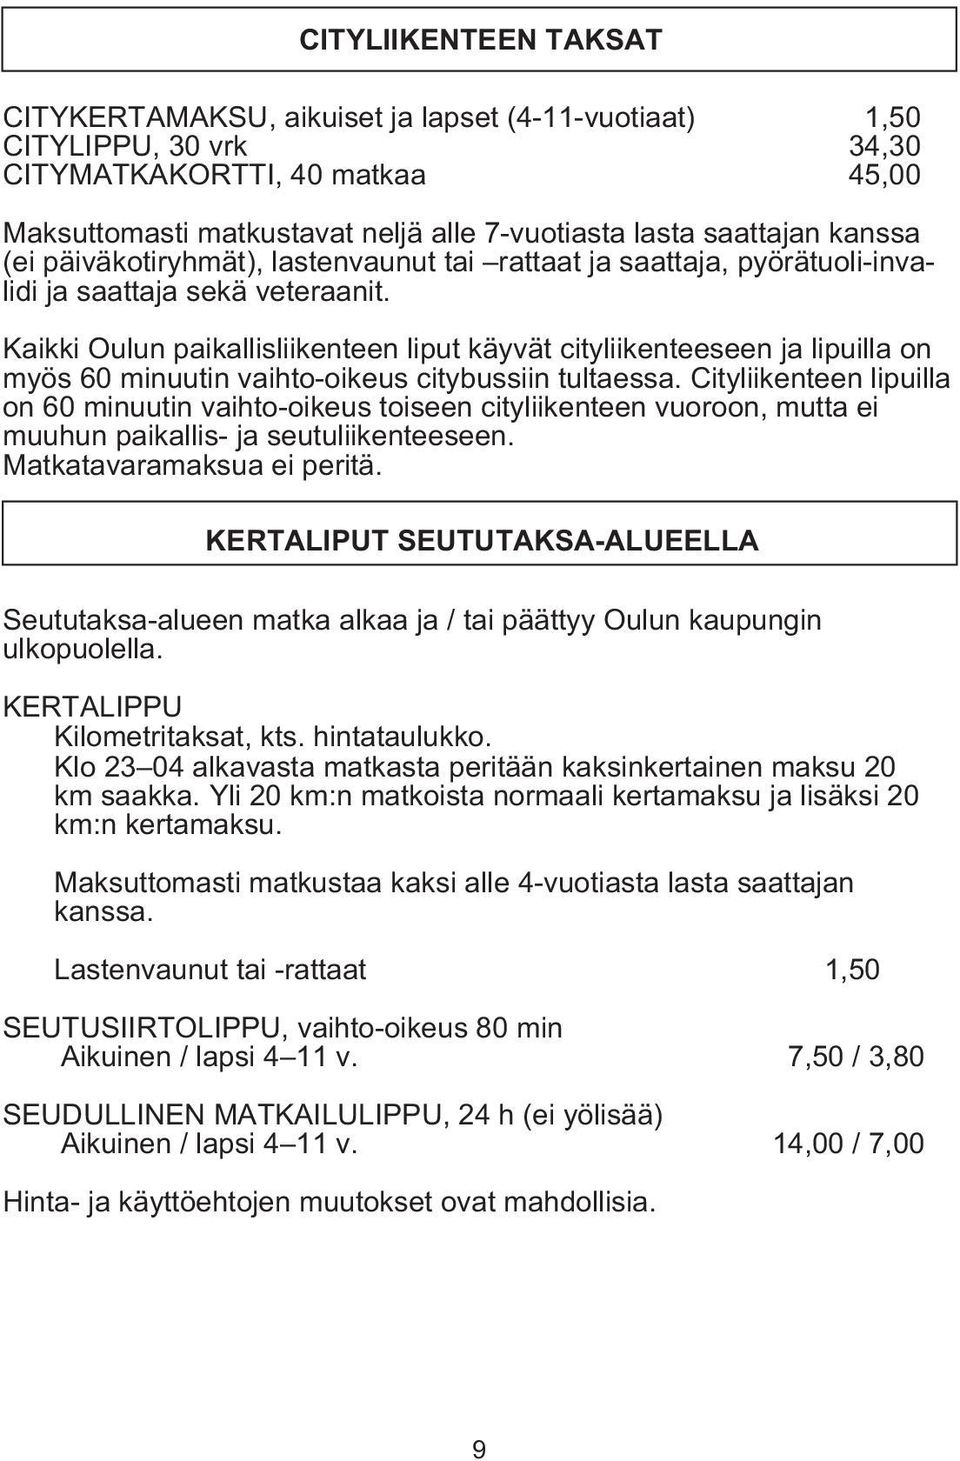 Kaikki Oulun paikallisliikenteen liput käyvät cityliikenteeseen ja lipuilla on myös 60 minuutin vaihto-oikeus citybussiin tultaessa.